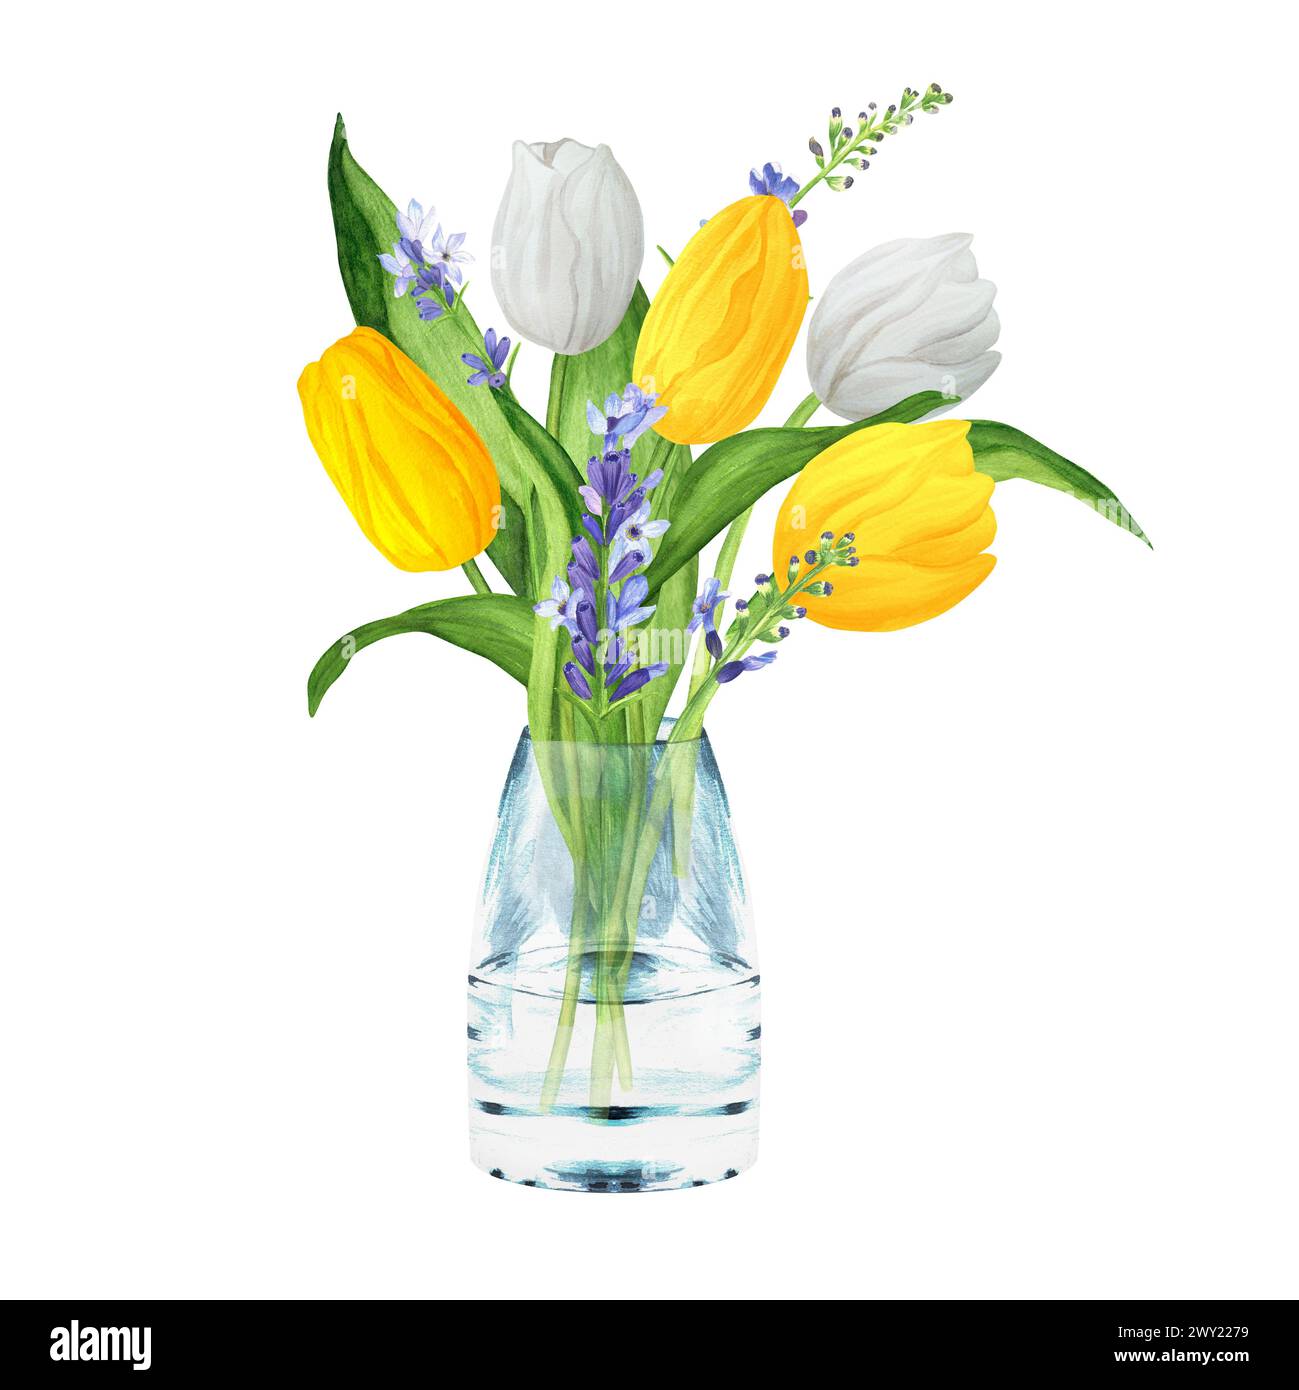 Illustration d'aquarelle dessinée à la main. Bouquet de fleurs avec tulipes blanches et jaunes, lavande et feuilles vertes. Bouquet de Pâques de printemps dans un vase en verre Banque D'Images